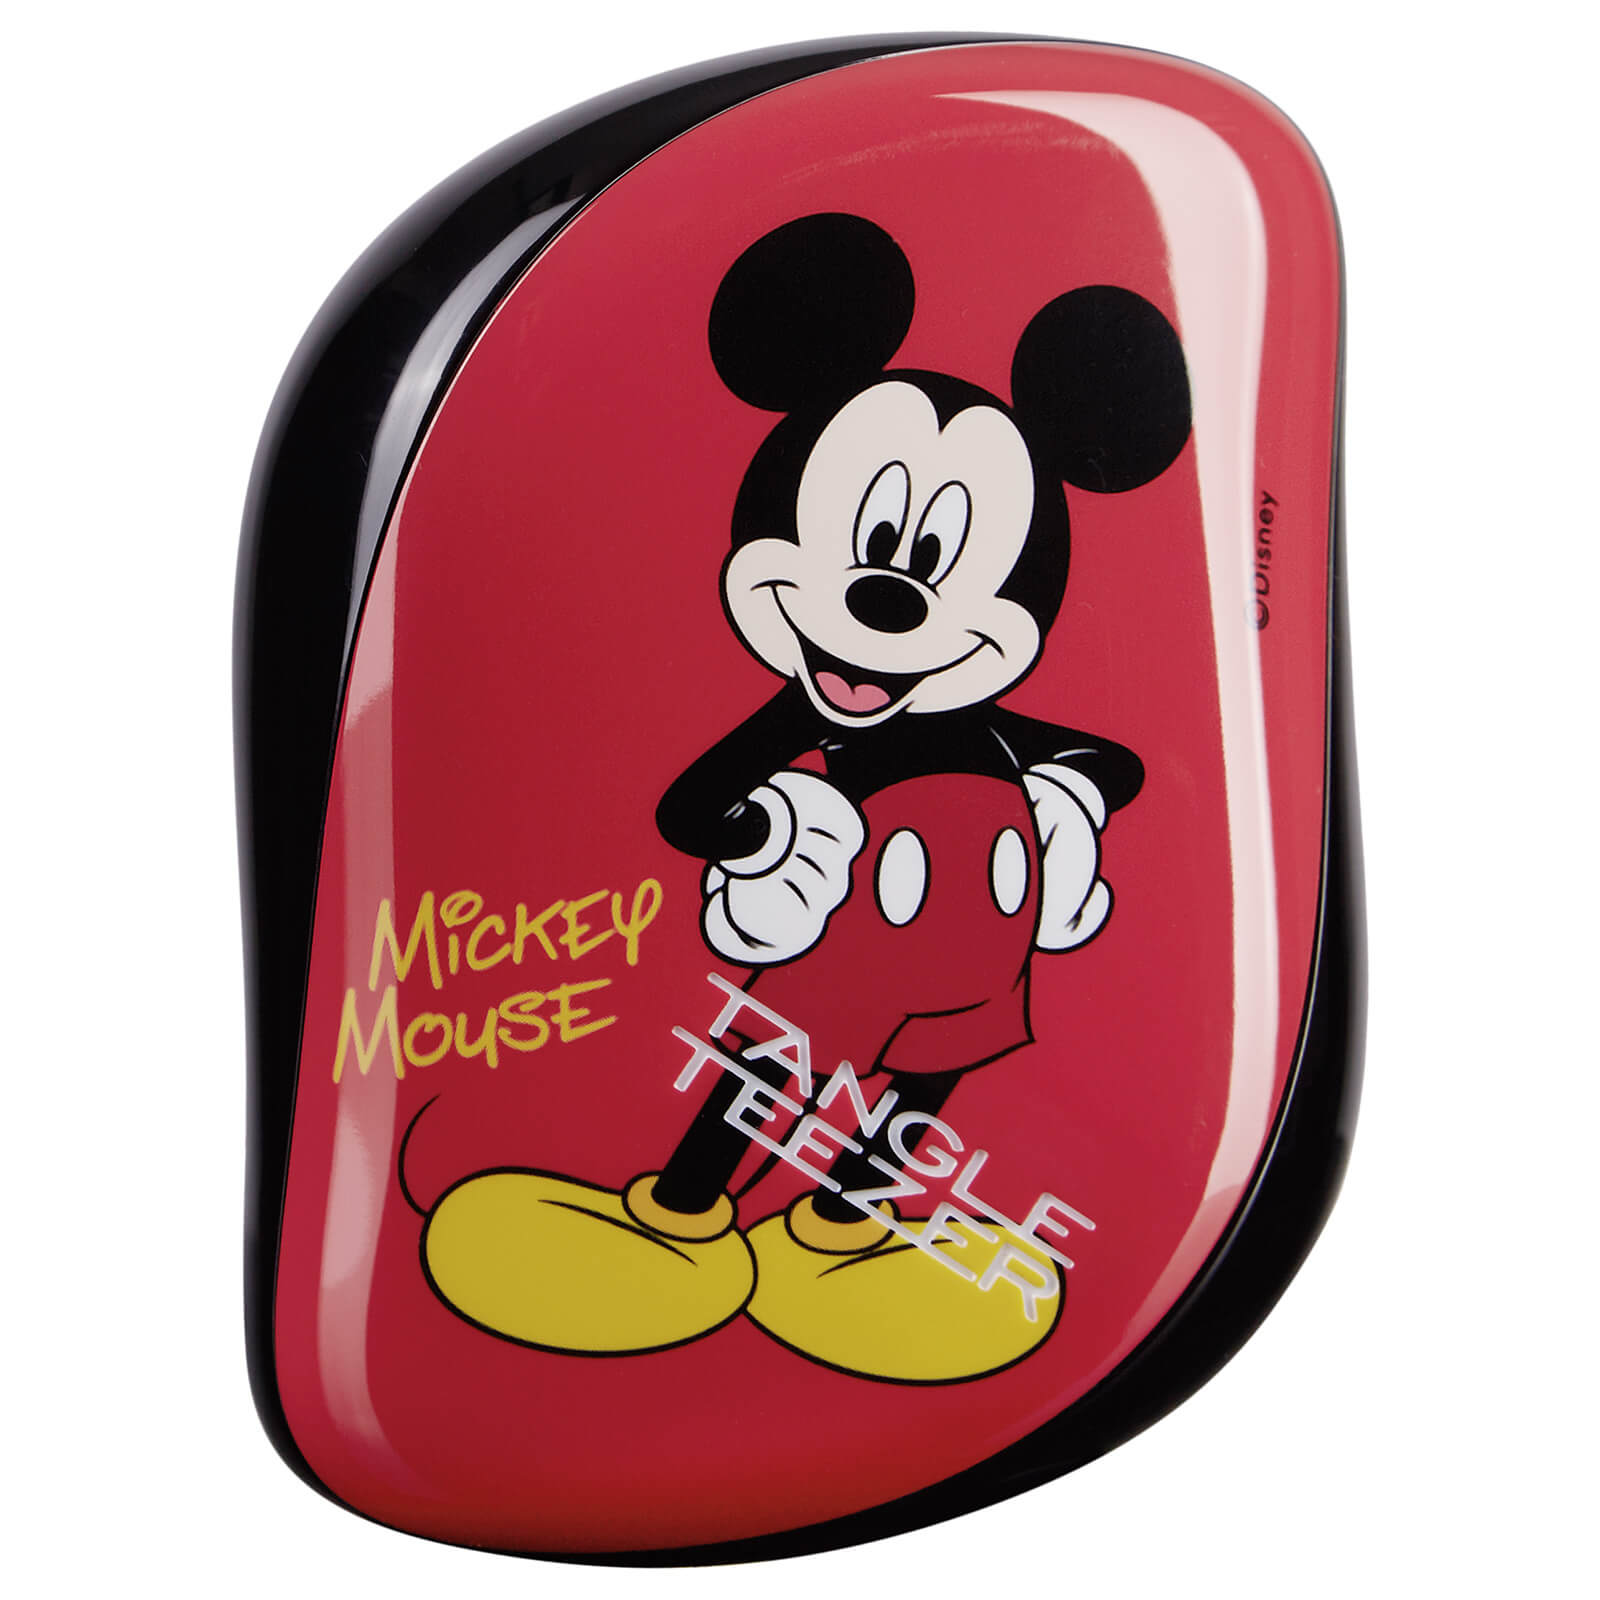 Cepillo para el pelo Compact Styler de Tangle Teezer - Mickey Mouse